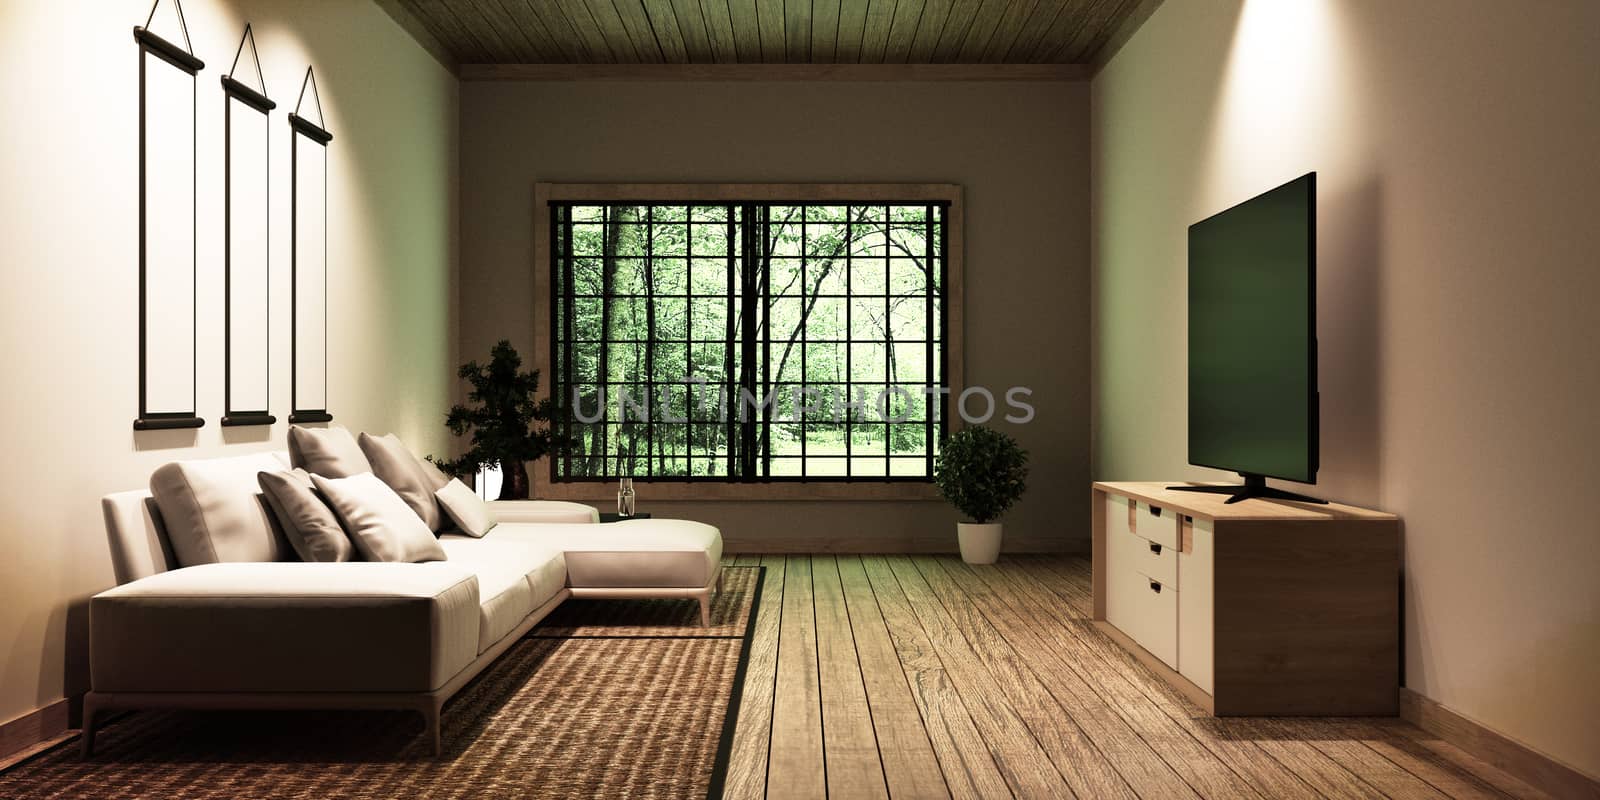 TV in modern white empty room interior,Designed for Japanese style lovers. 3D rednering